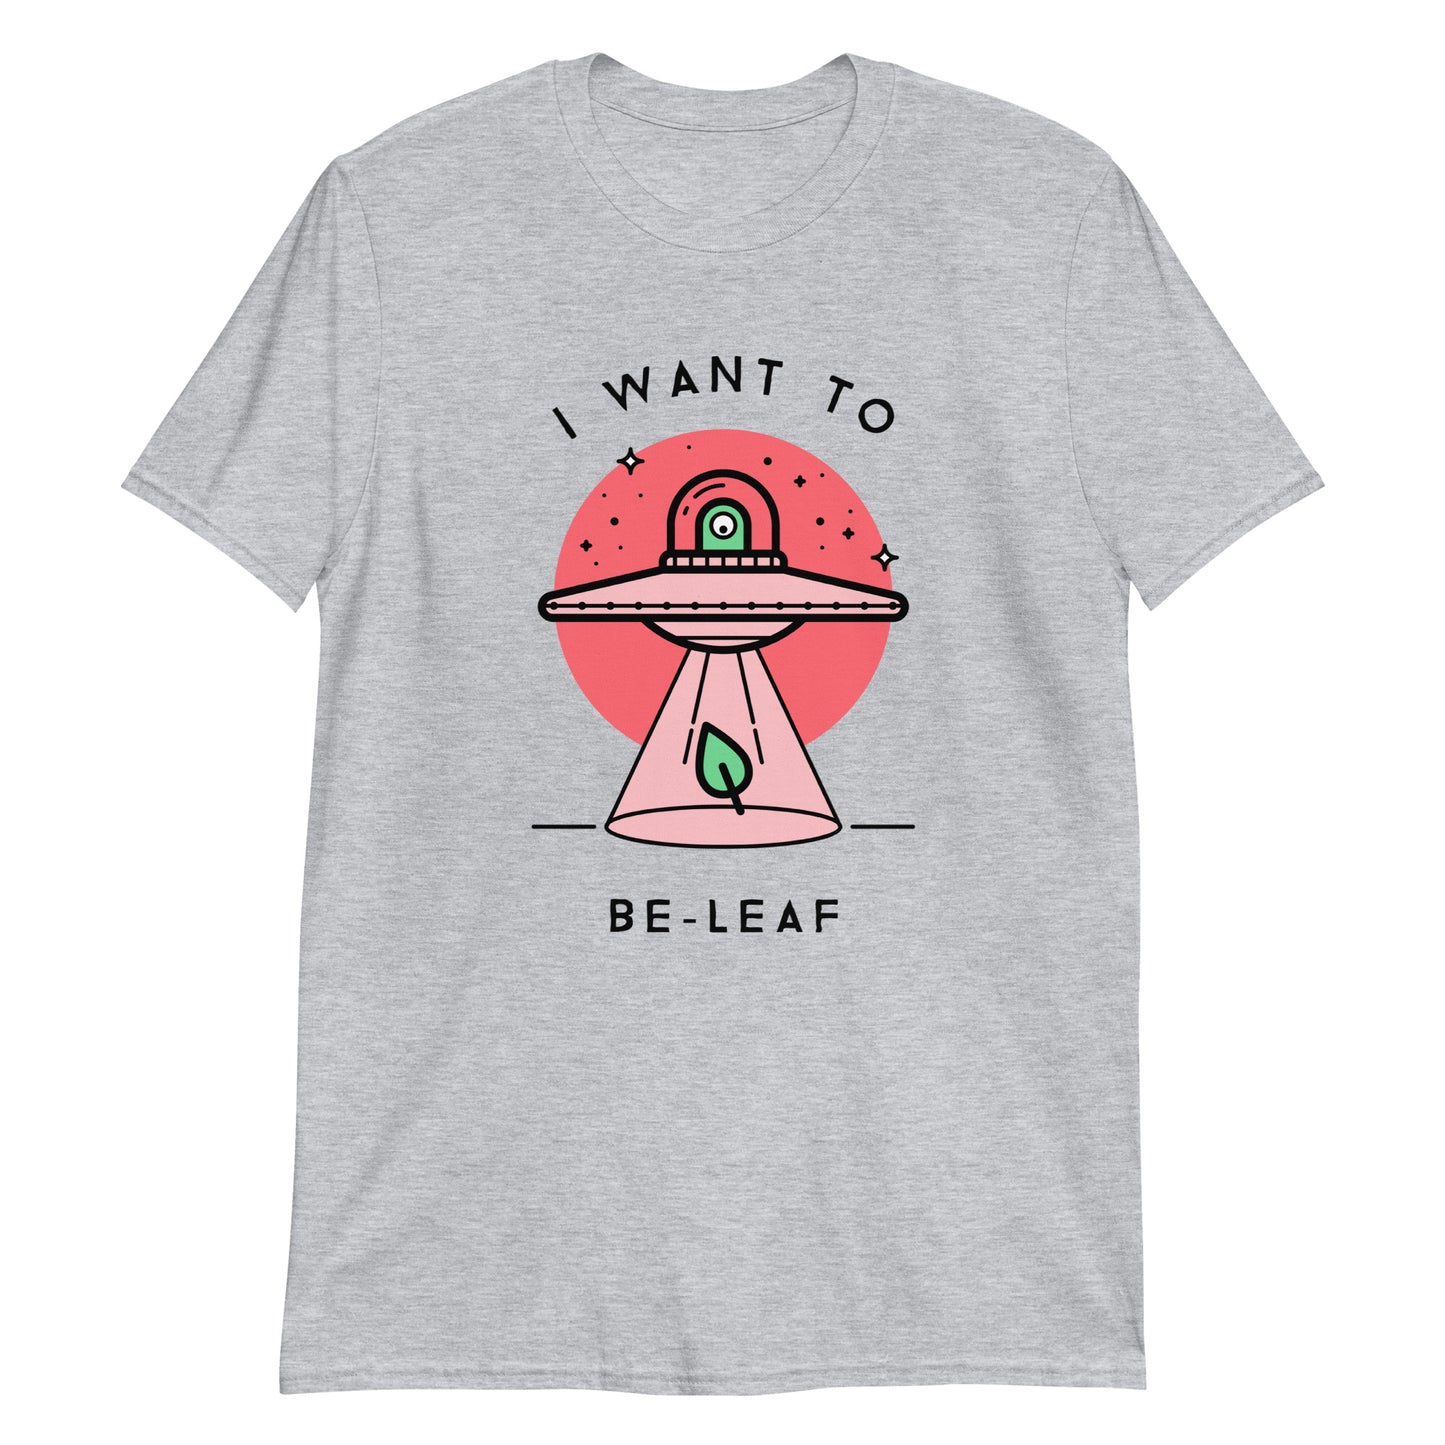 I Want To Be-Leaf, UFO - Short-Sleeve Unisex T-Shirt Sport Grey Unisex T-shirt Sci Fi